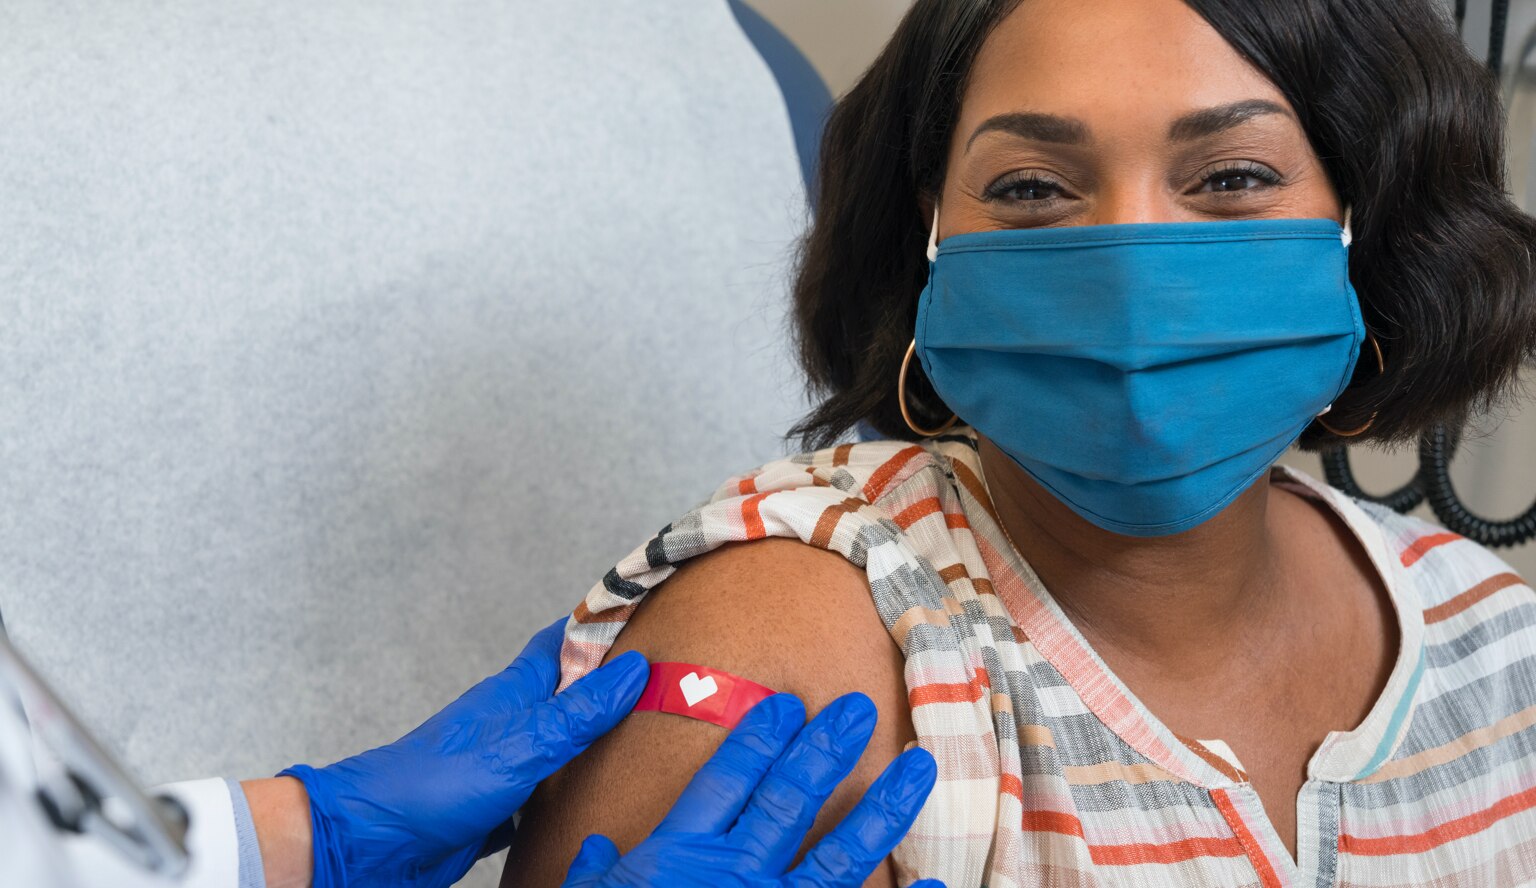 Imagen de una mujer con una cubierta para la cara que sonríe mientras un trabajador de la salud le pone una venda luego de haberle aplicado la vacuna contra el COVID-19.